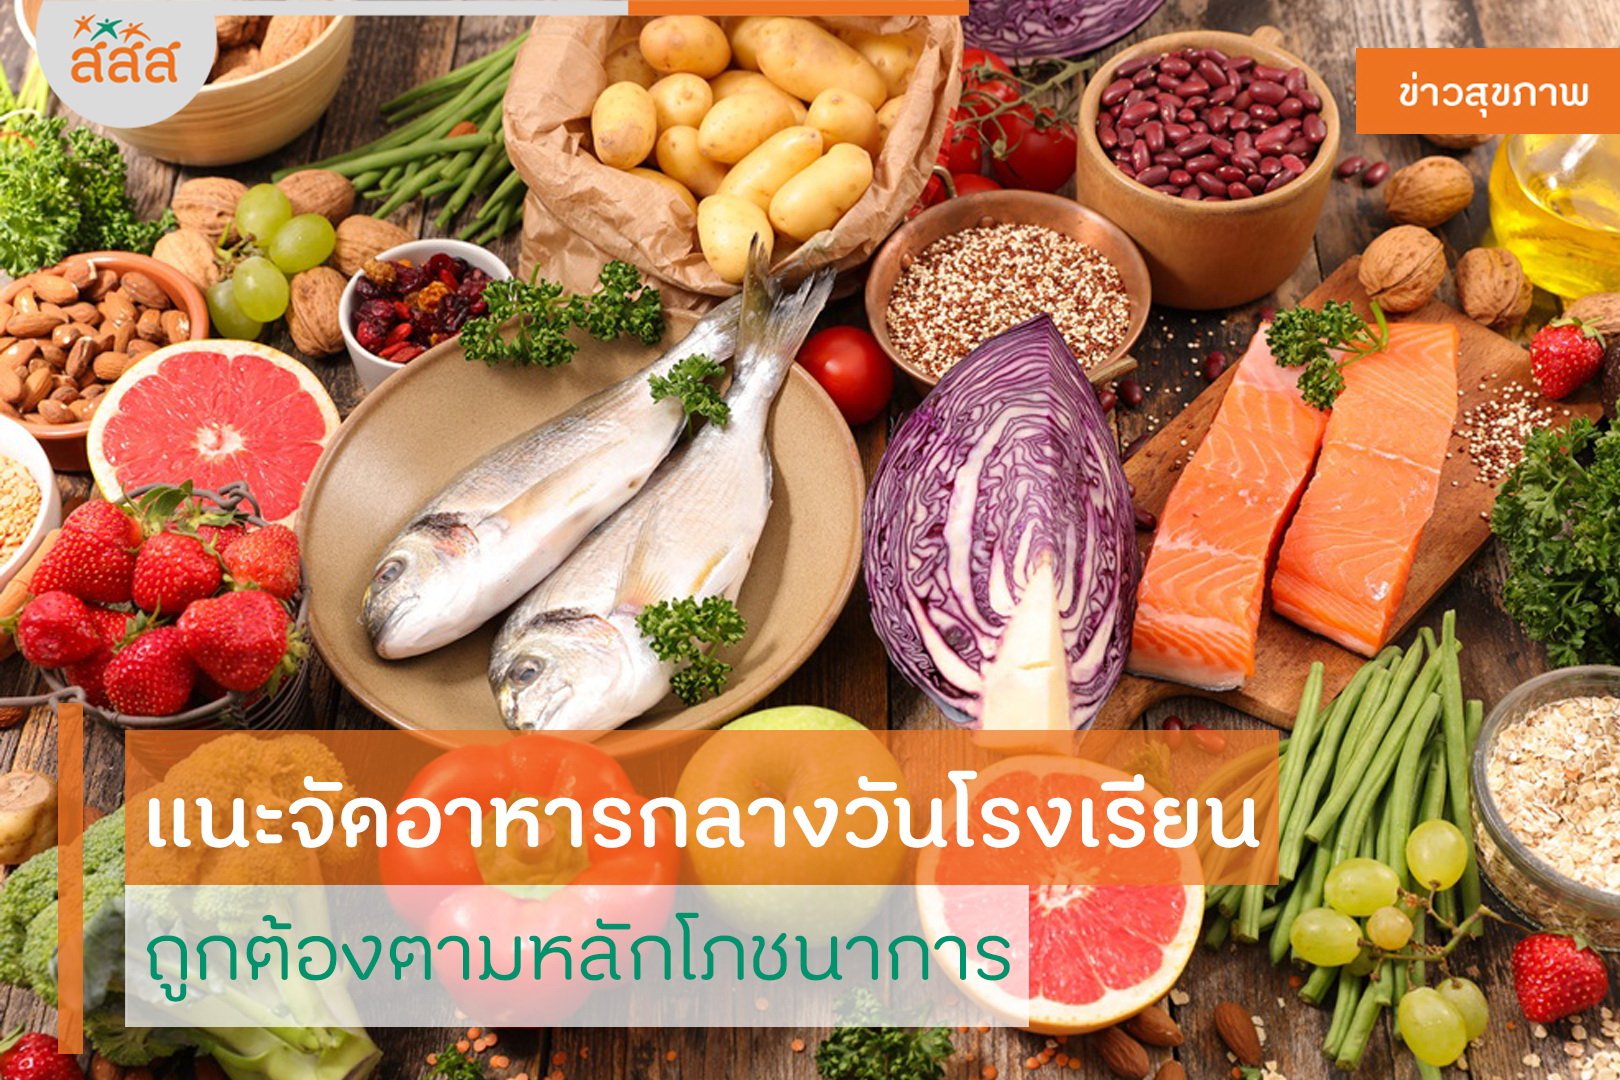 แนะจัดอาหารกลางวันโรงเรียน ถูกต้องตามหลักโภชนาการ thaihealth